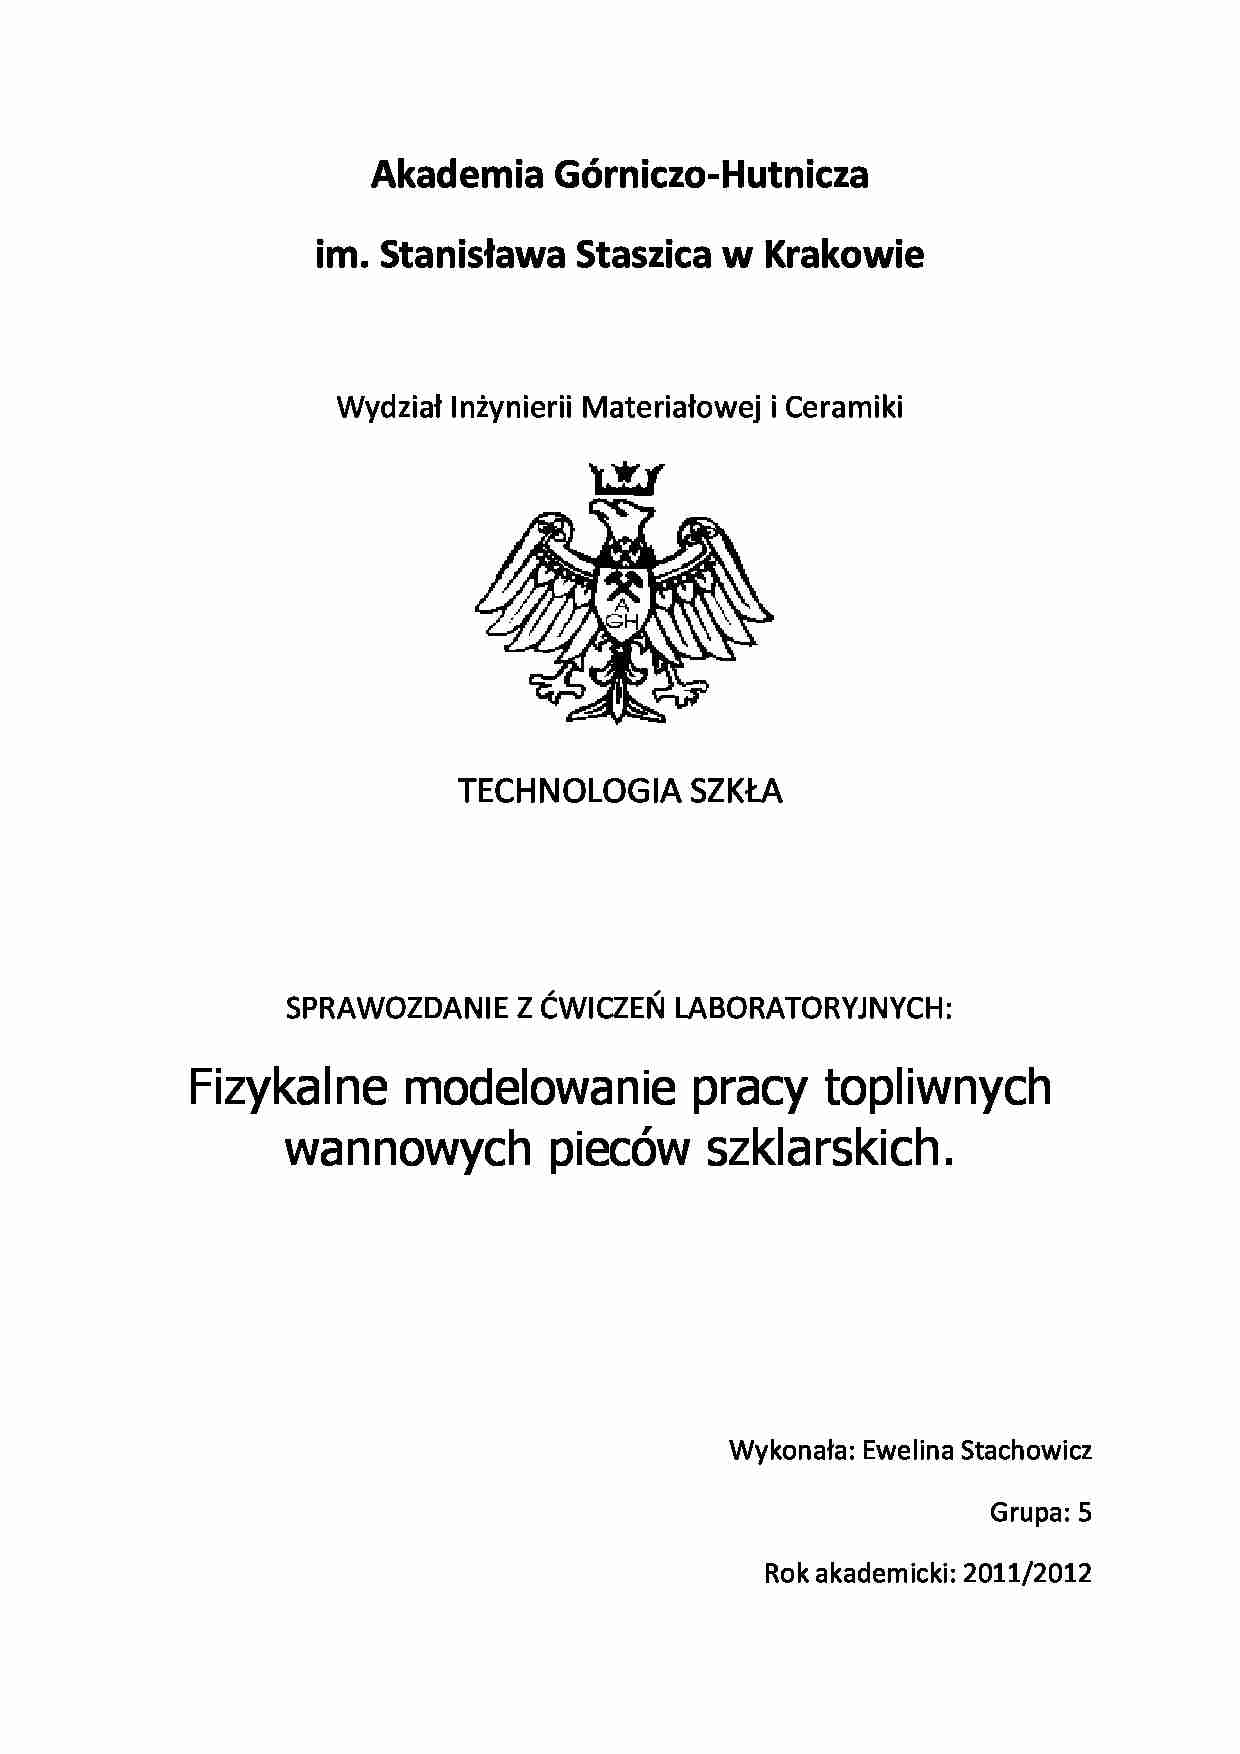 Technologia szkła - sprawozdanie - strona 1